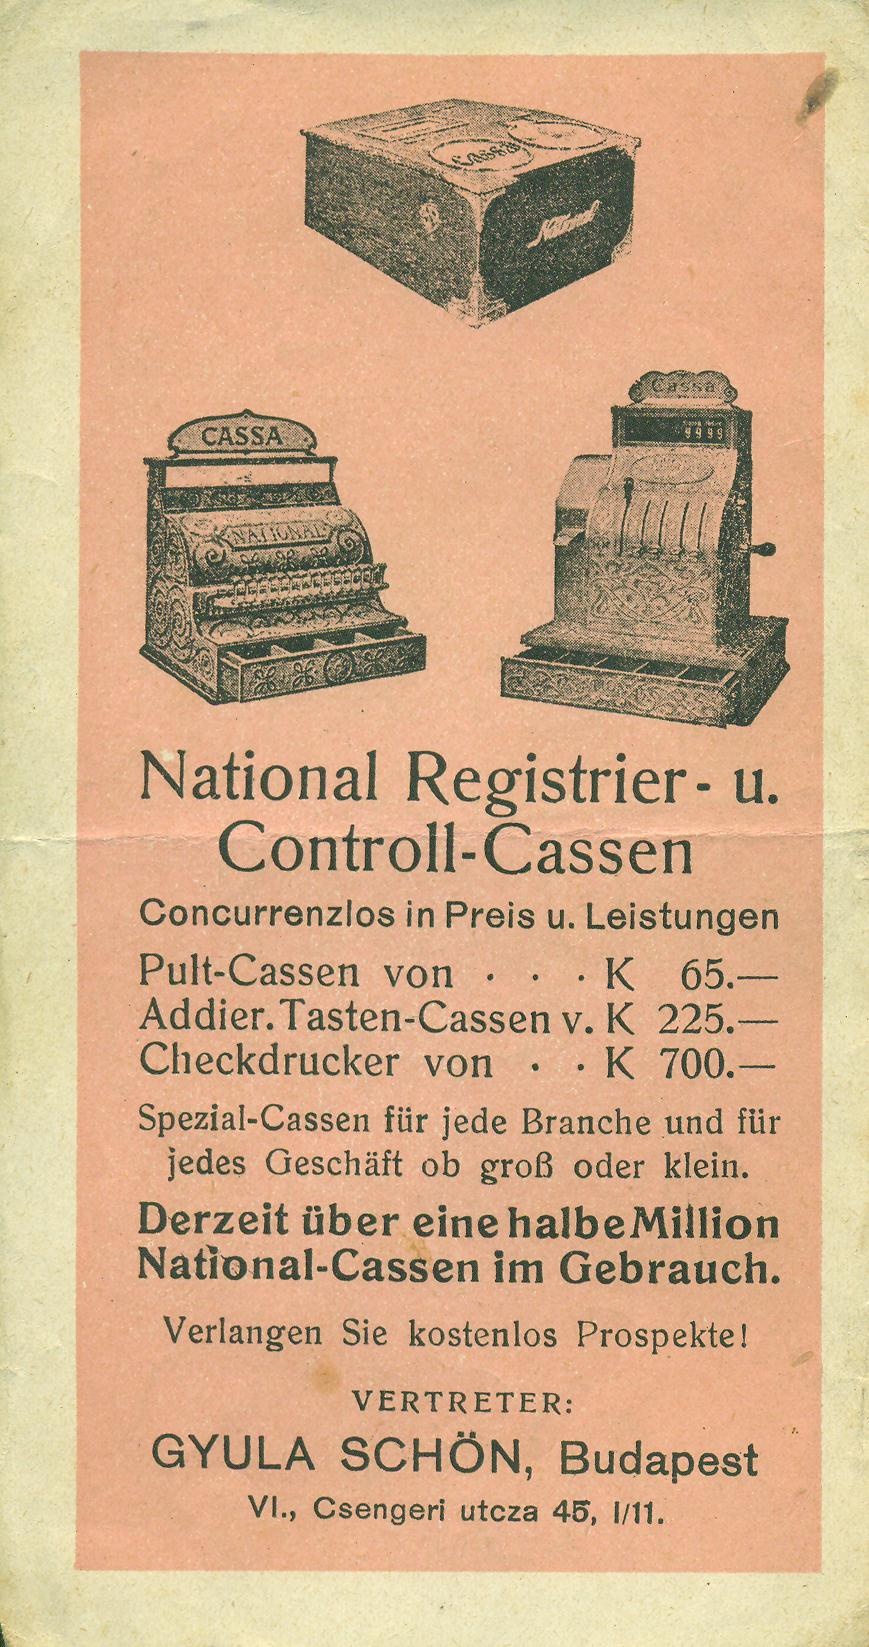 National Registrier-u. Controll - Cassen (Magyar Kereskedelmi és Vendéglátóipari Múzeum CC BY-NC-SA)